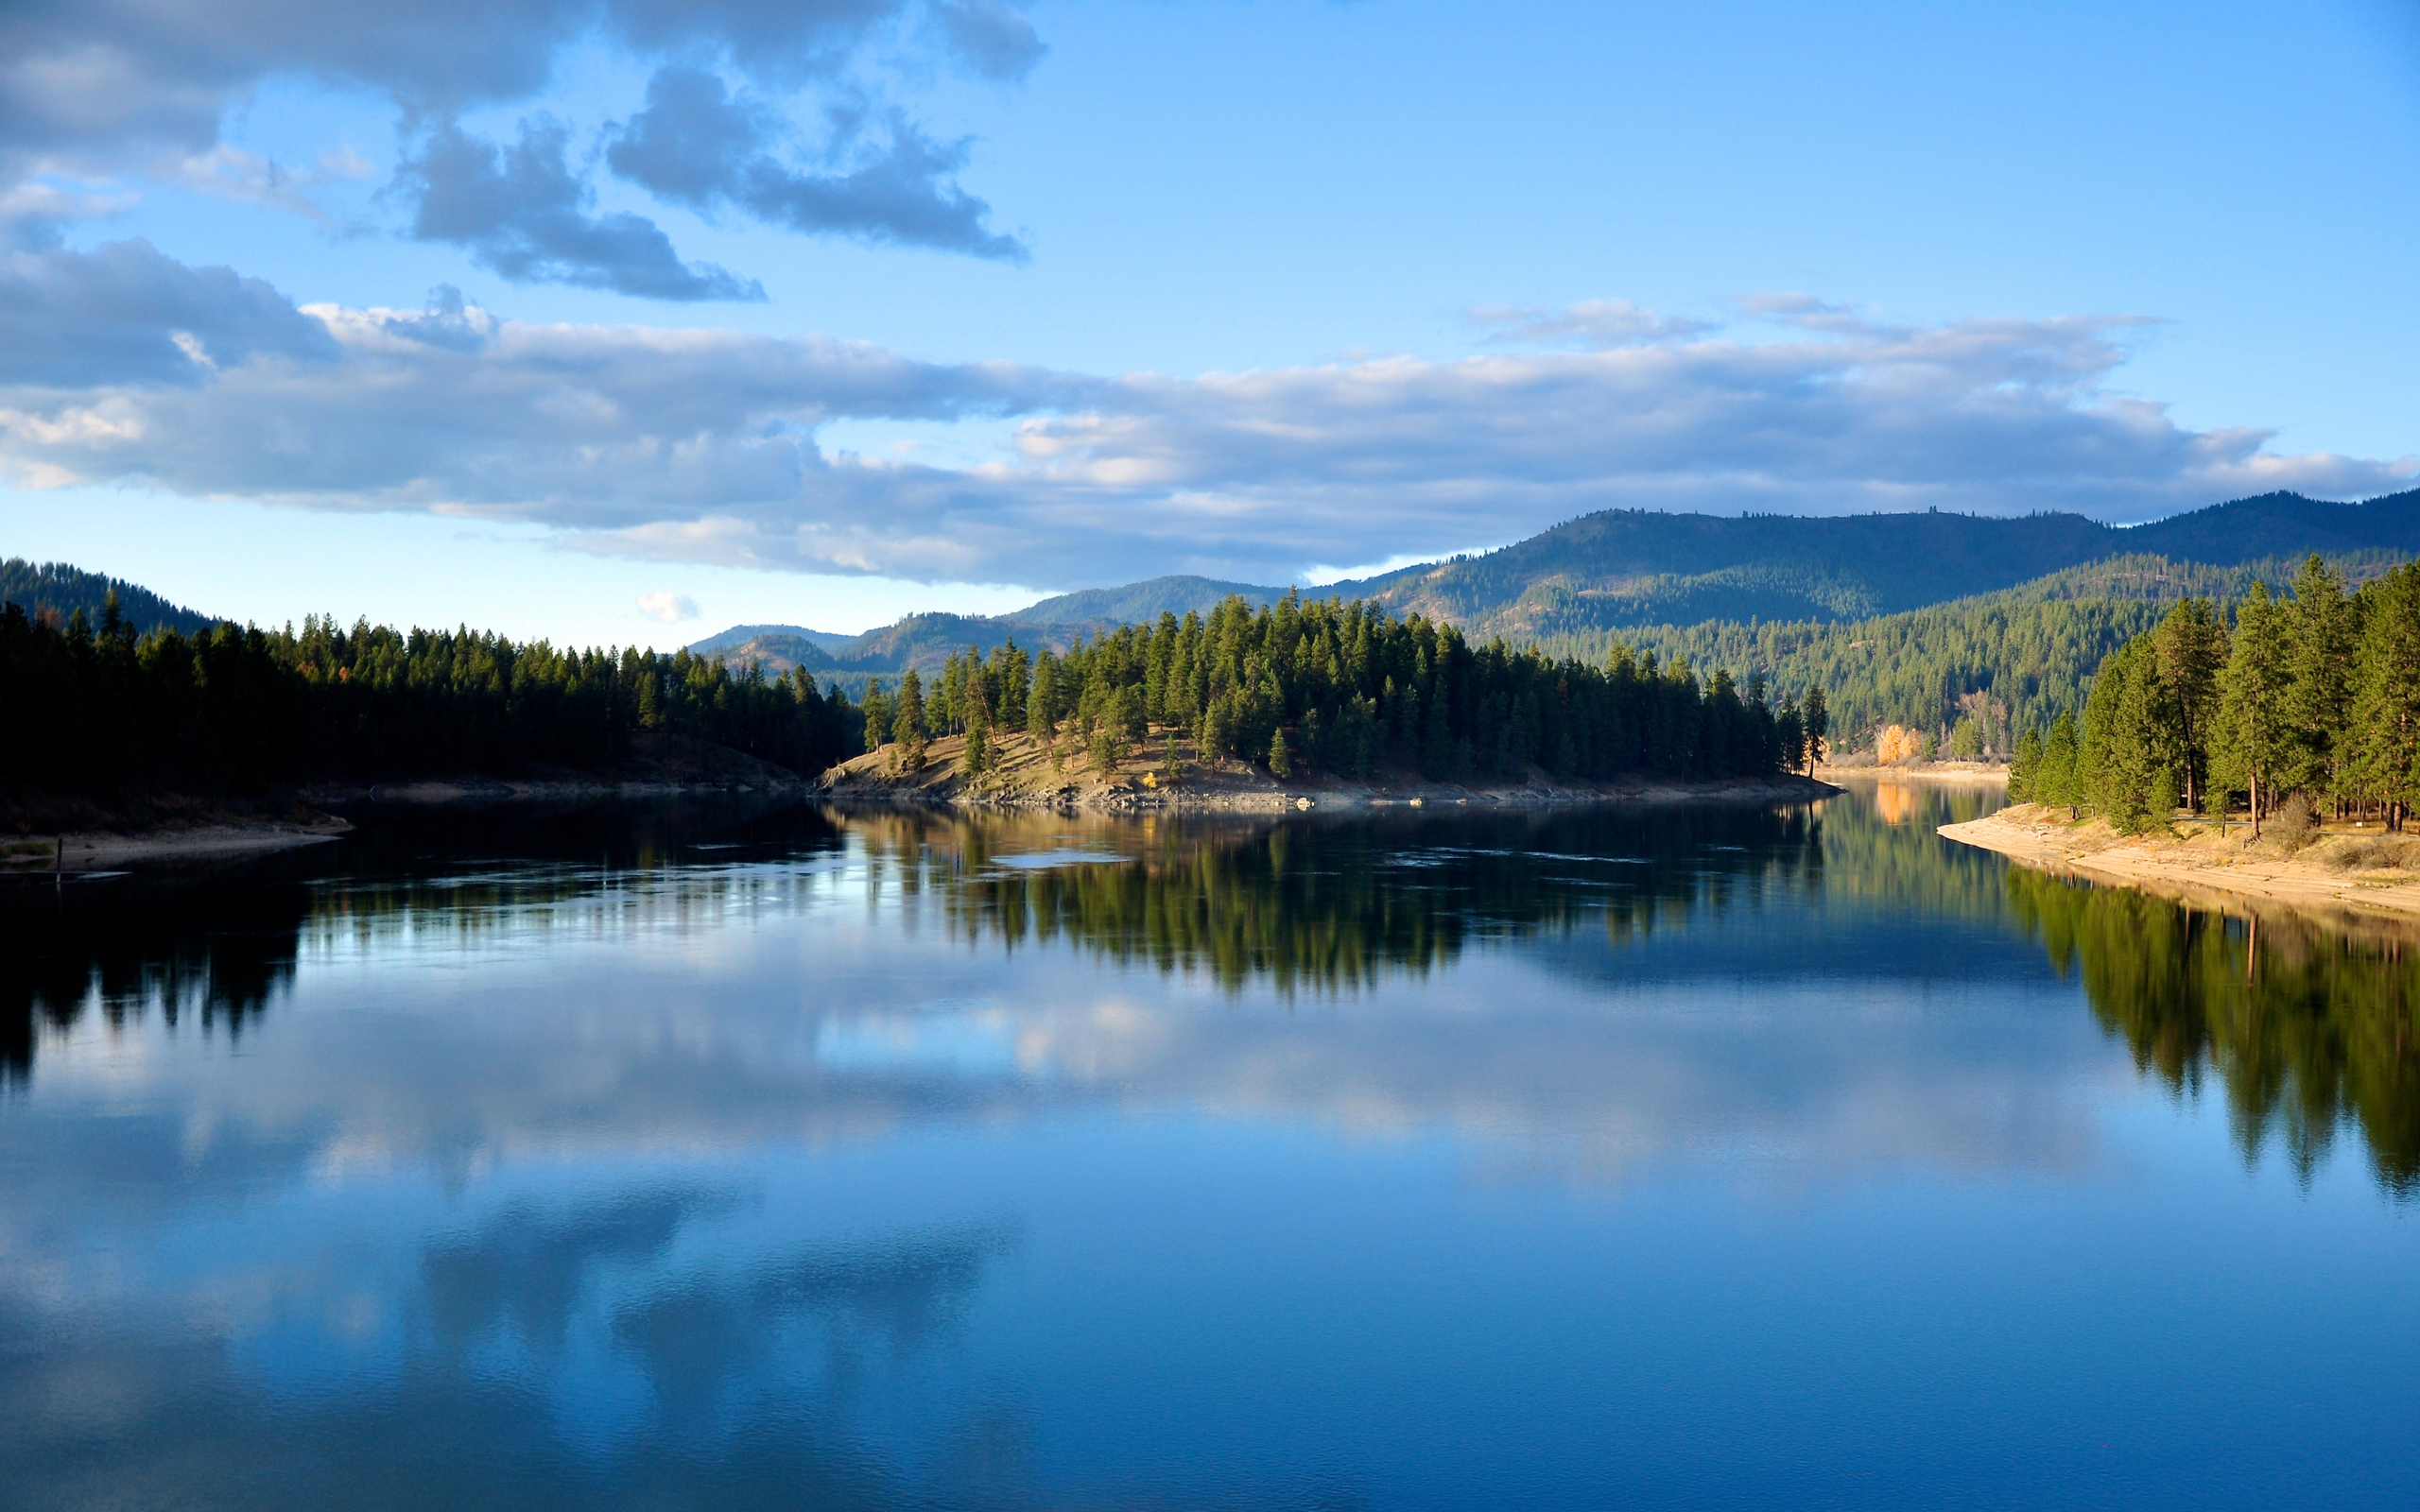 منظره ای تماشایی از دریاچه و آسمان آبی با درختان سبز با کیفیت 4K